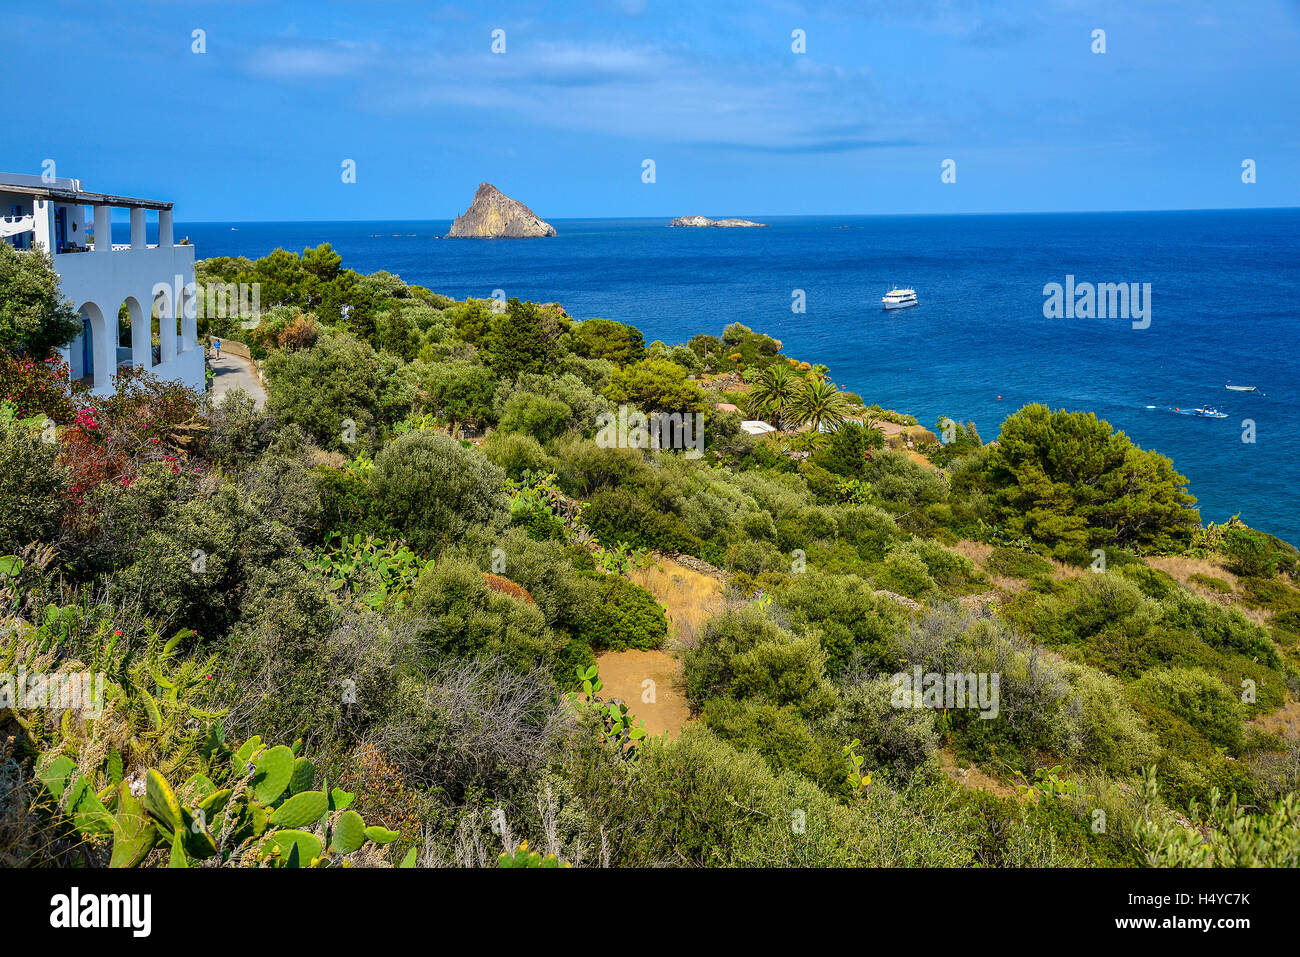 Italien Sizilien Liparischen Inseln Panarea der Küste in der Nähe von Drautto und den Inseln Dattilo und Lisca Bianca im Hintergrund Stockfoto